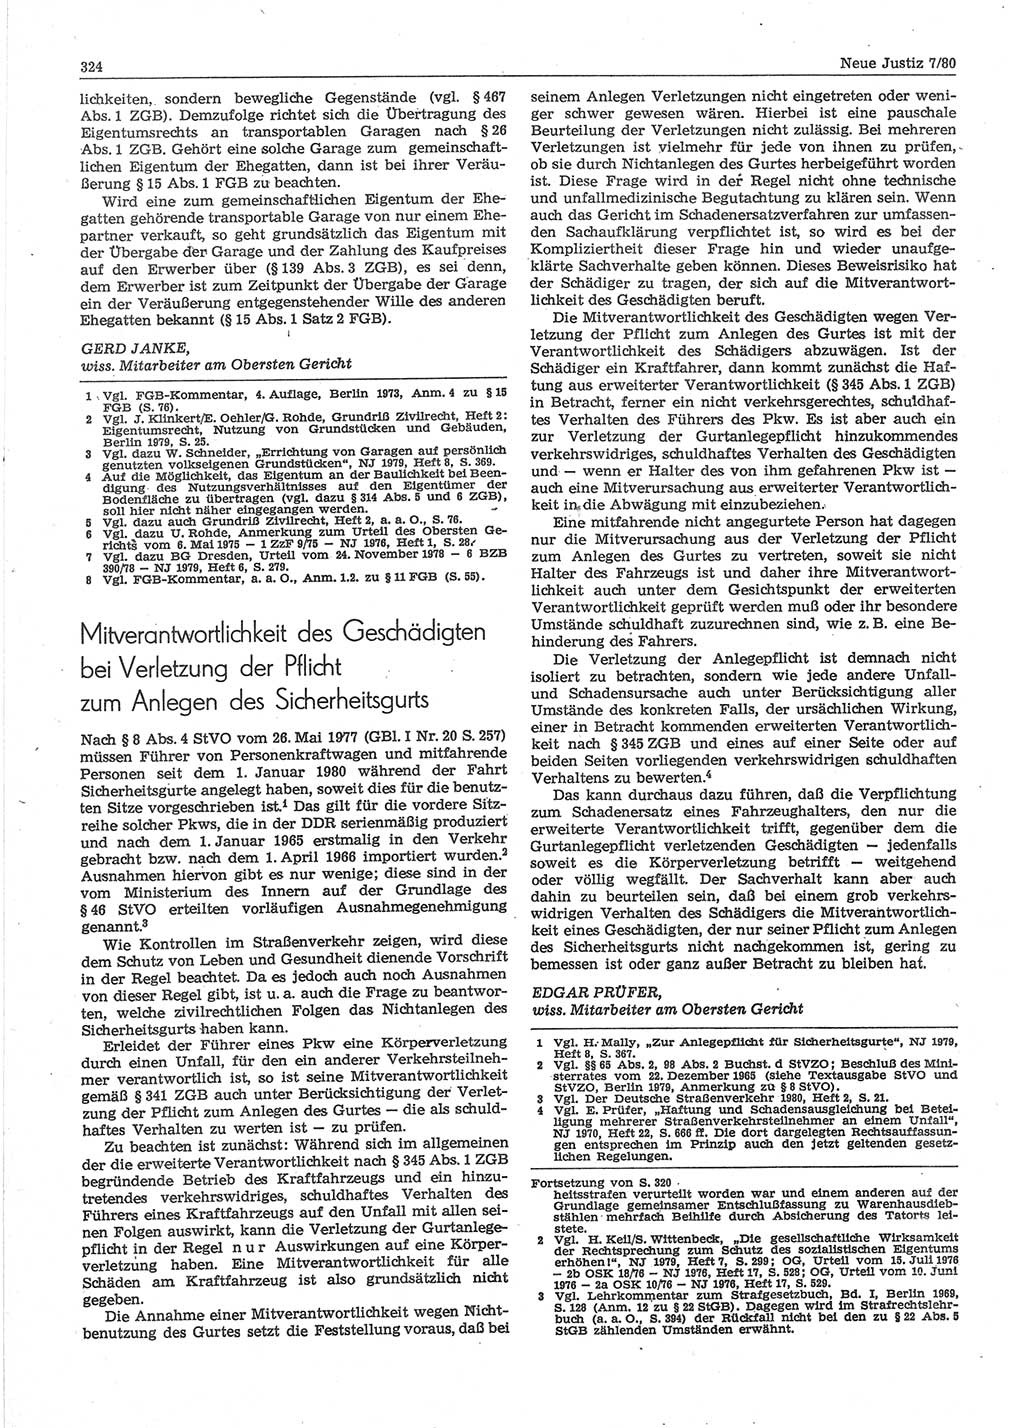 Neue Justiz (NJ), Zeitschrift für sozialistisches Recht und Gesetzlichkeit [Deutsche Demokratische Republik (DDR)], 34. Jahrgang 1980, Seite 324 (NJ DDR 1980, S. 324)